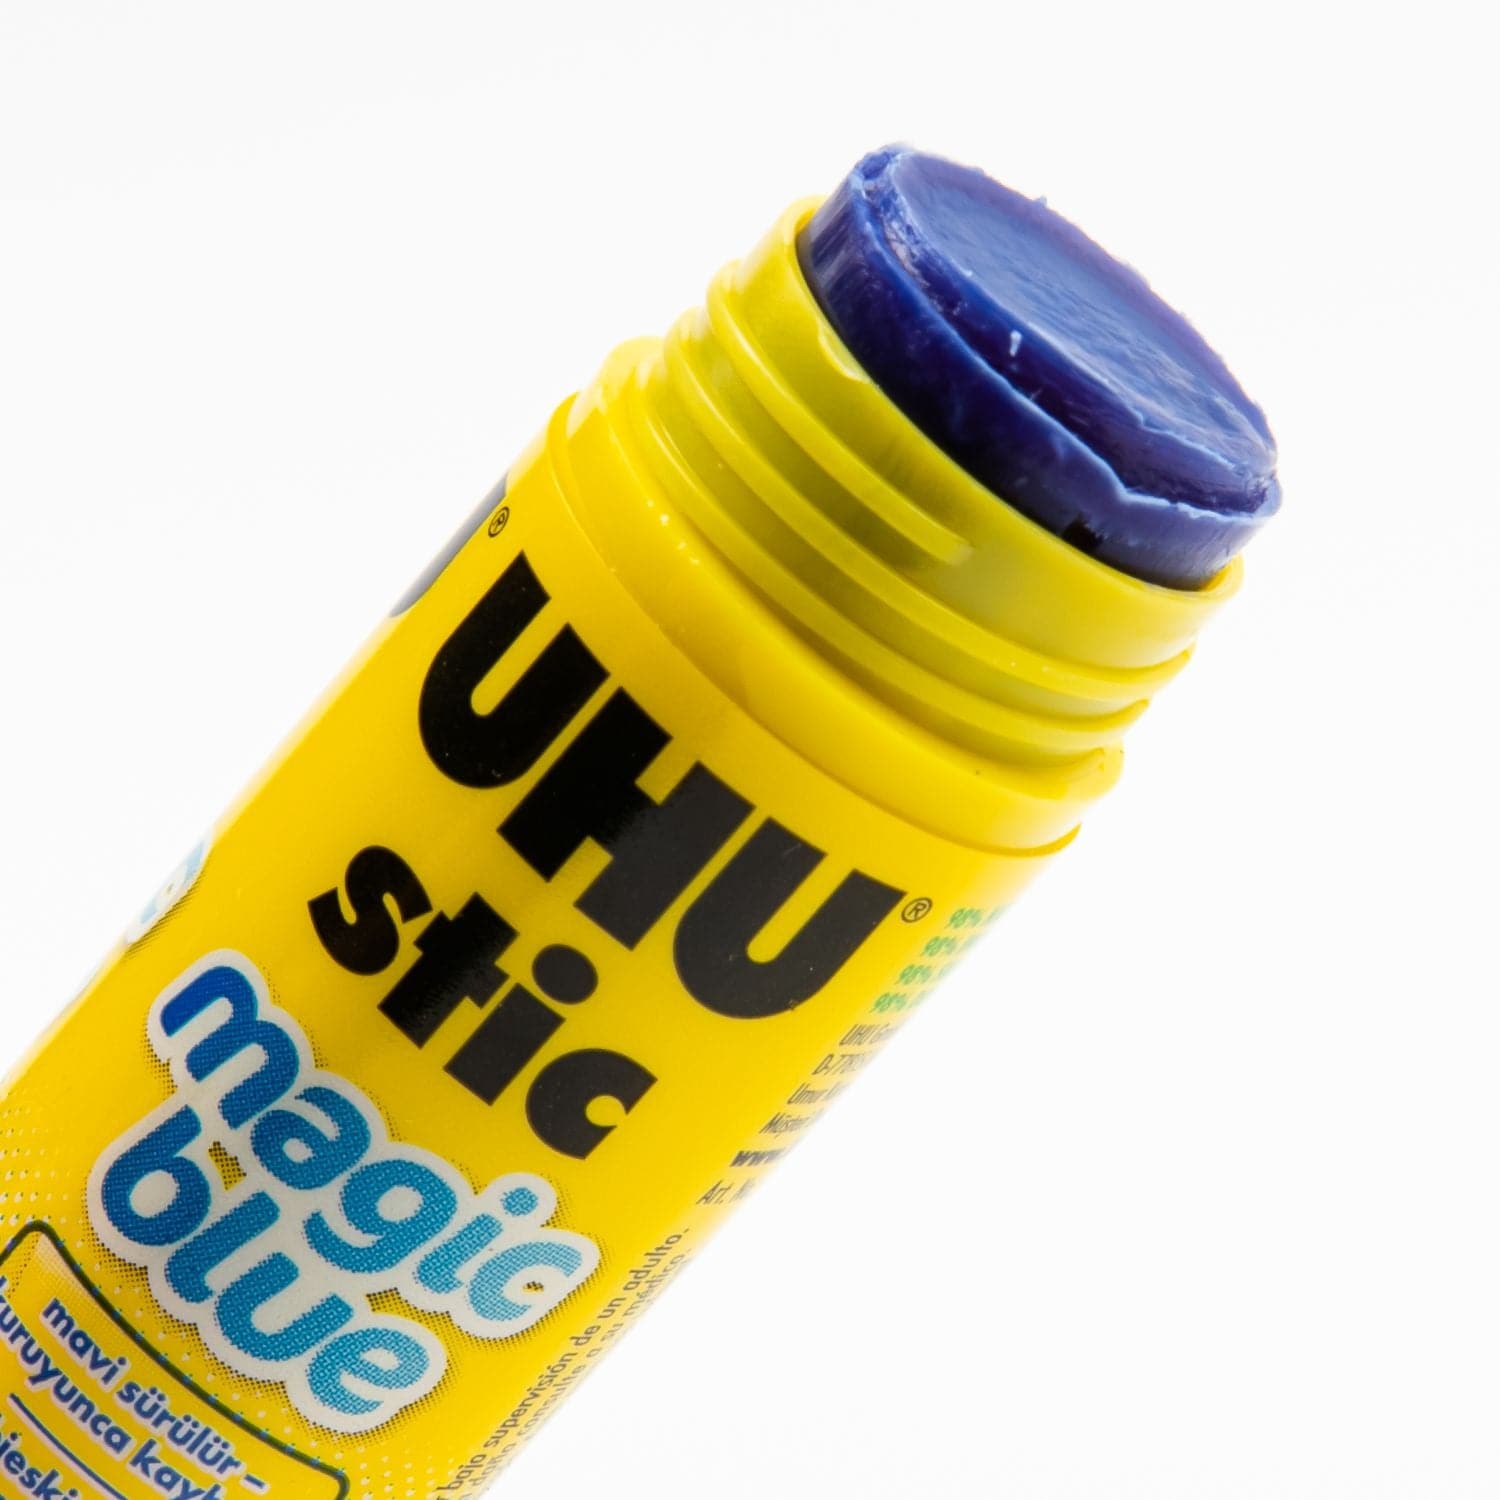 UHU Stic Magic Blue